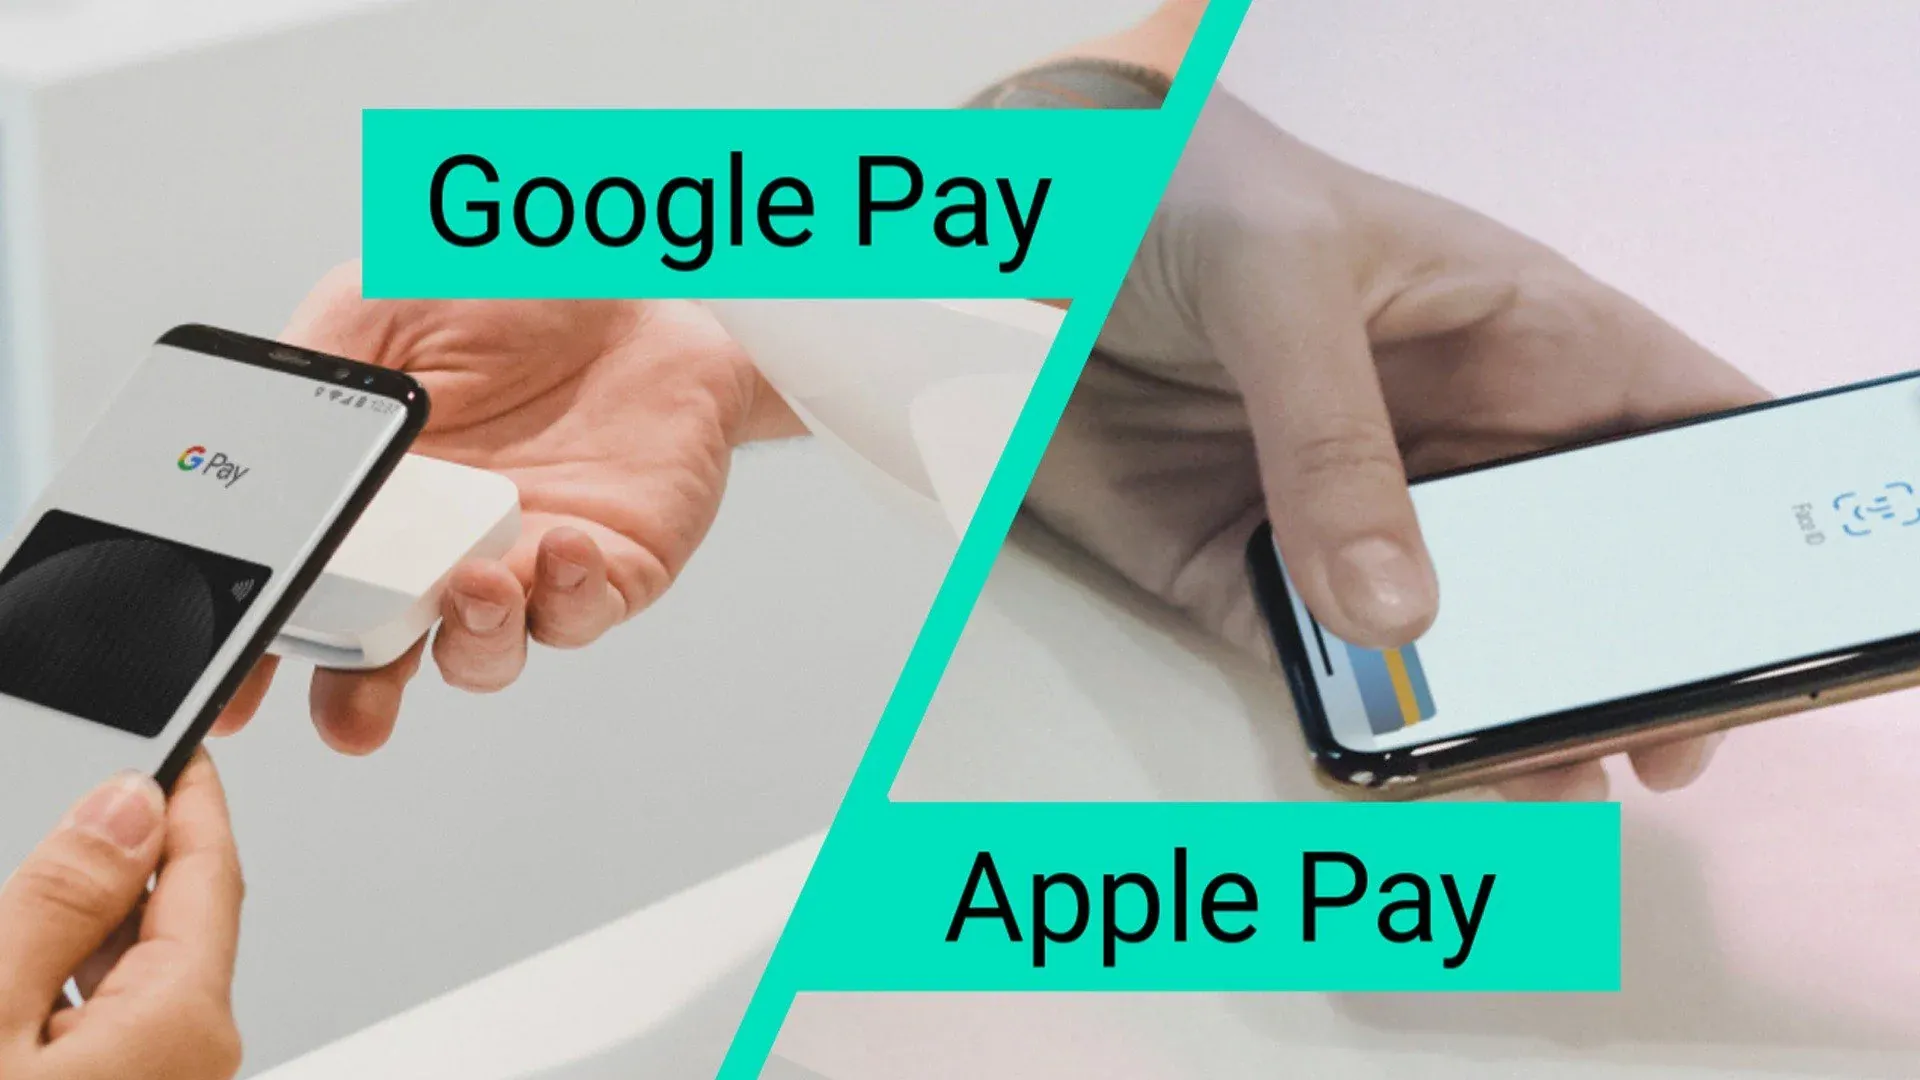 Apple Pay và Google Pay - Cơ chế hoạt động và cách xử lý thông tin thẻ tín dụng khác biệt như thế nào?